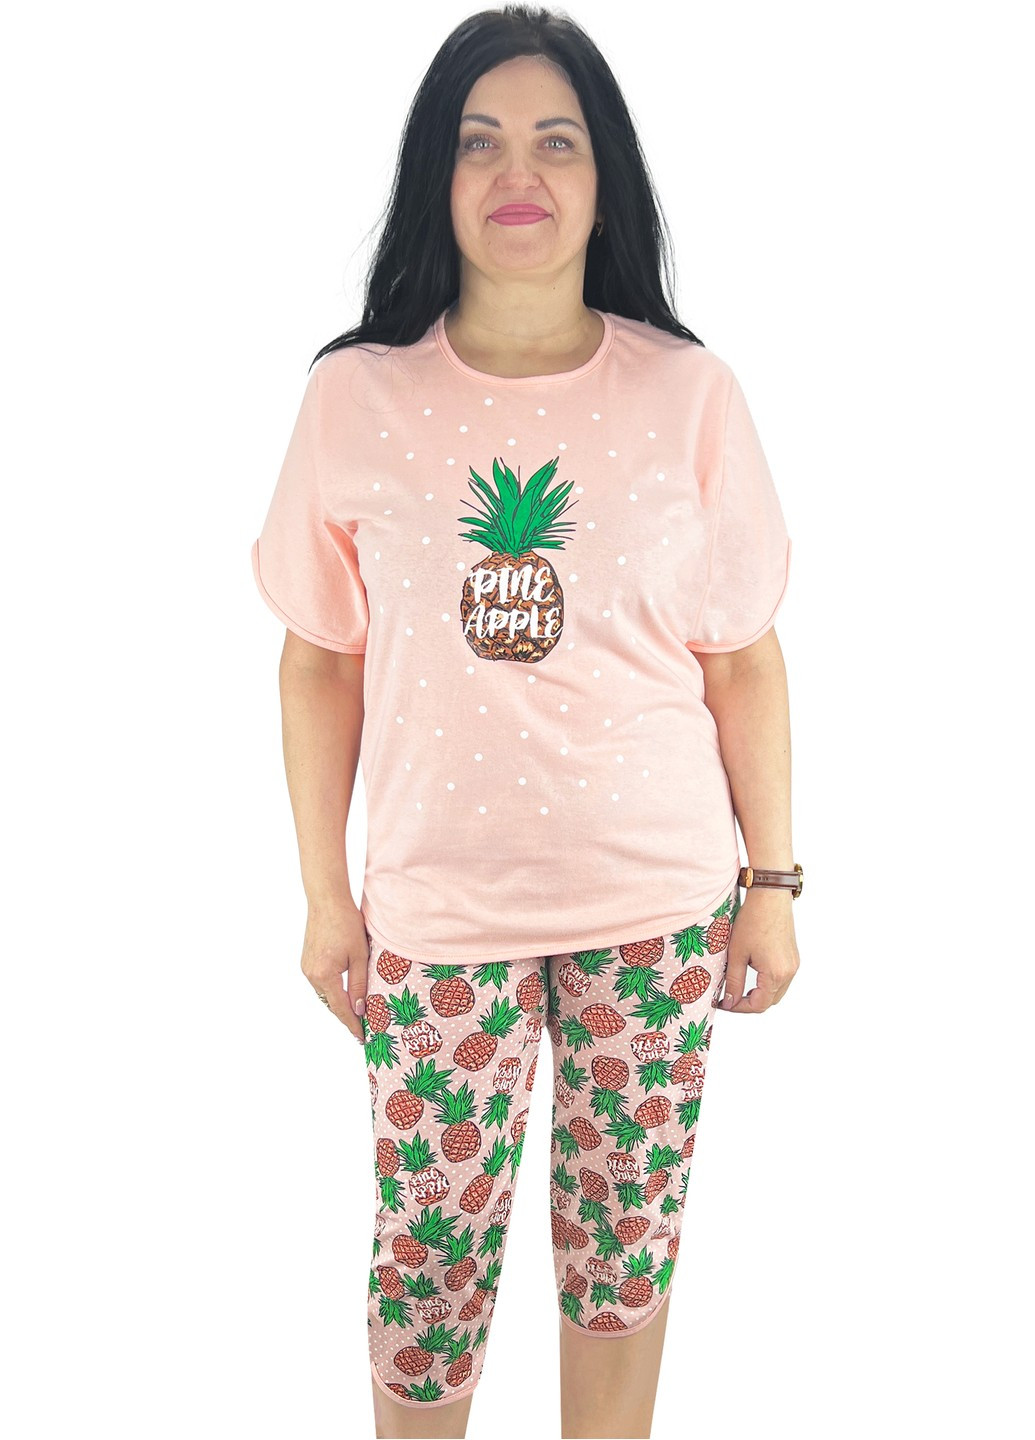 Персиковая всесезон пижама футболка и бриджи ананас футболка + бриджи Жемчужина стилей 4674